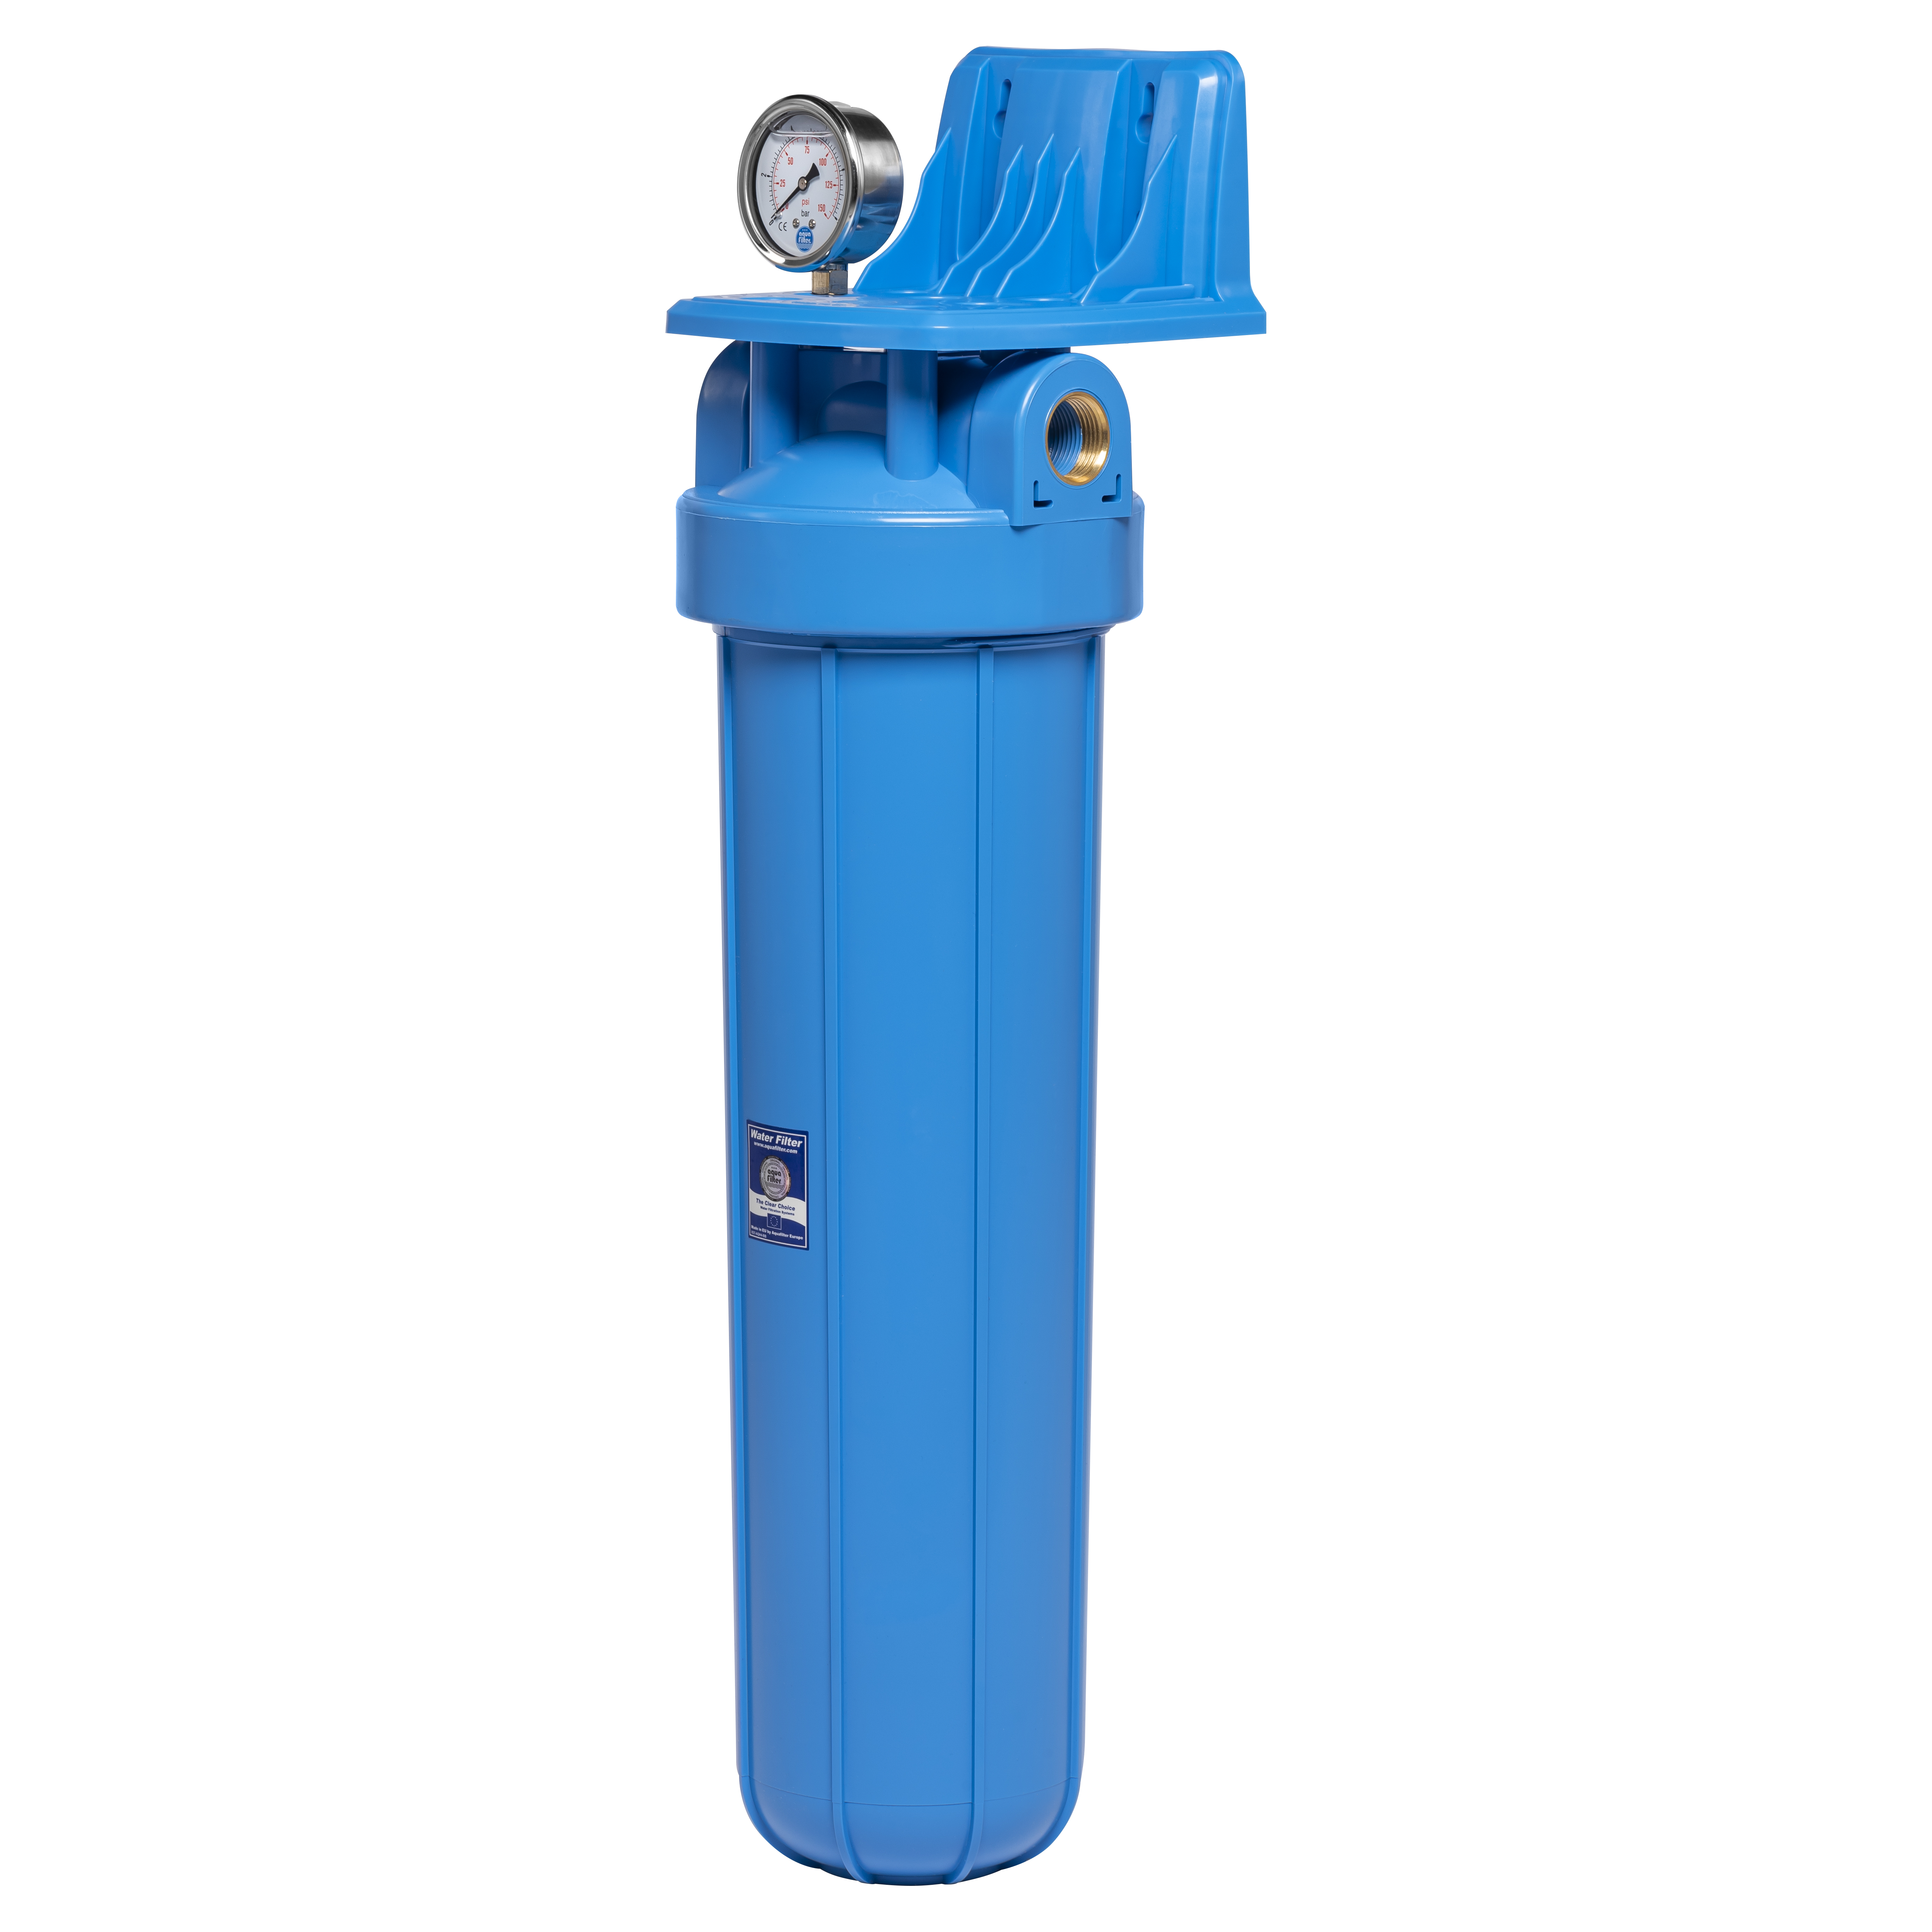 Фильтр для очистки воды от ржавчины и песка Aquafilter FH20B1-B-WB